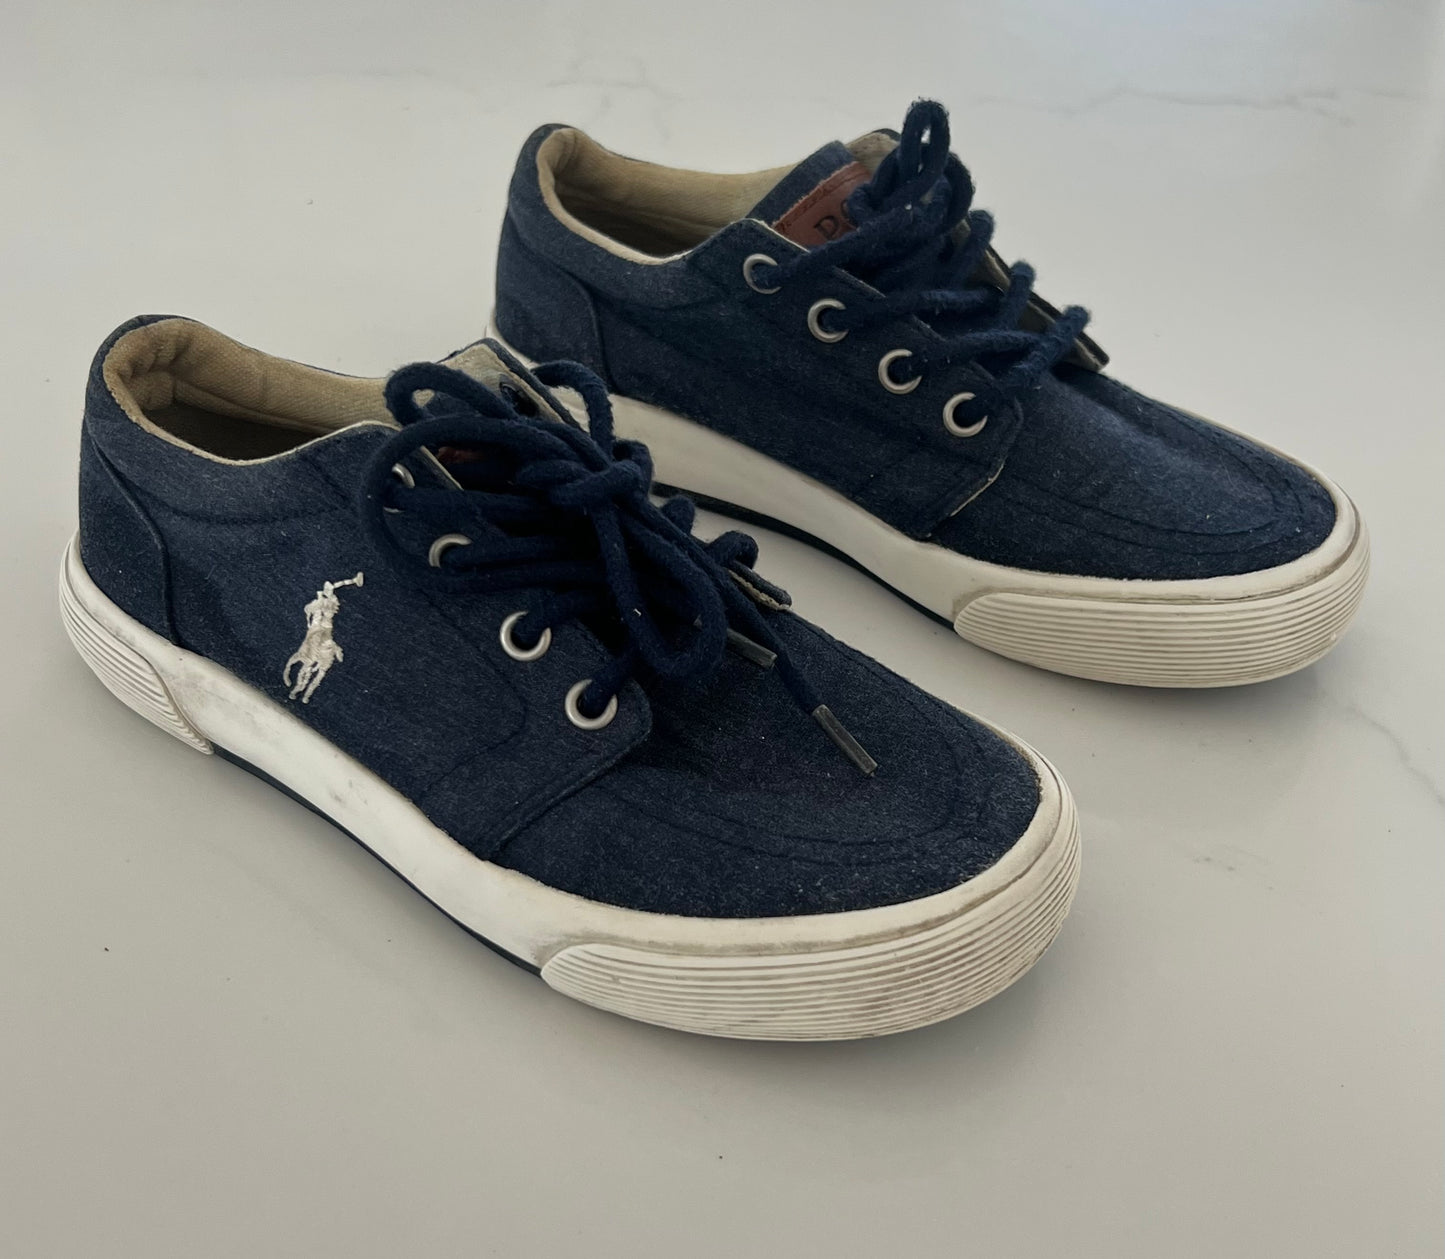 Polo Navy Blue Shoes - Boys 12.5